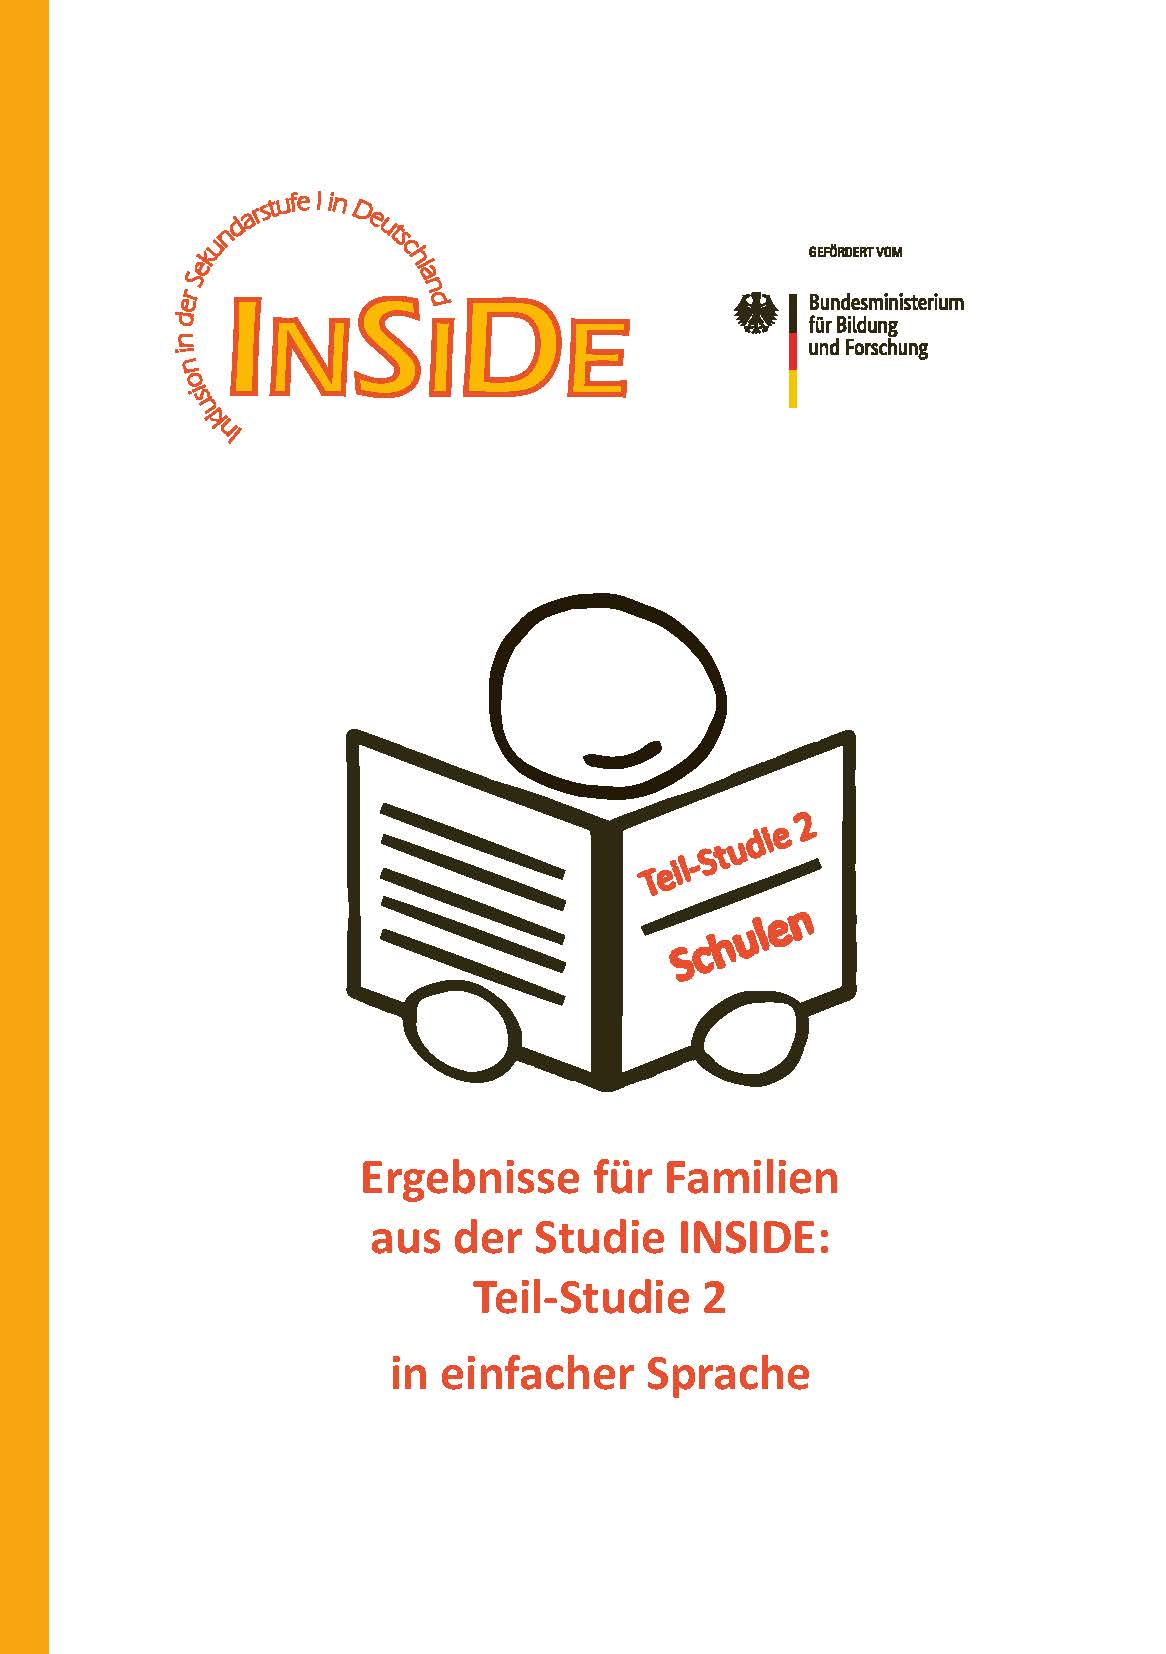 INSIDE-Ergebnisbroschüre für Schulen zu Teilstudie 2 in einfacher Sprache